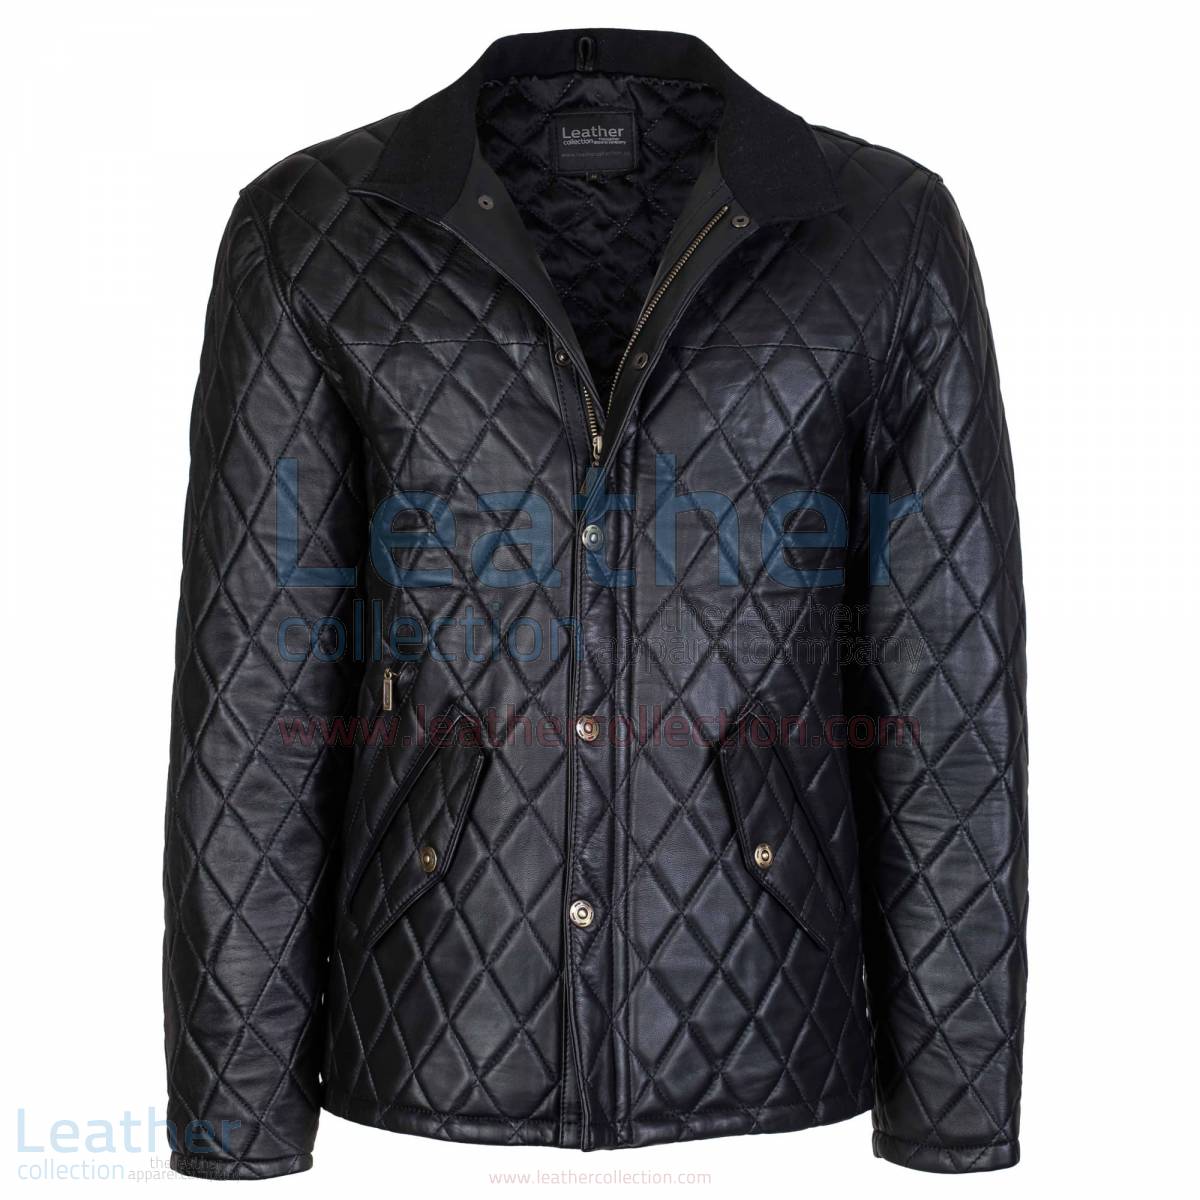 Black Diamond Leather Jacket